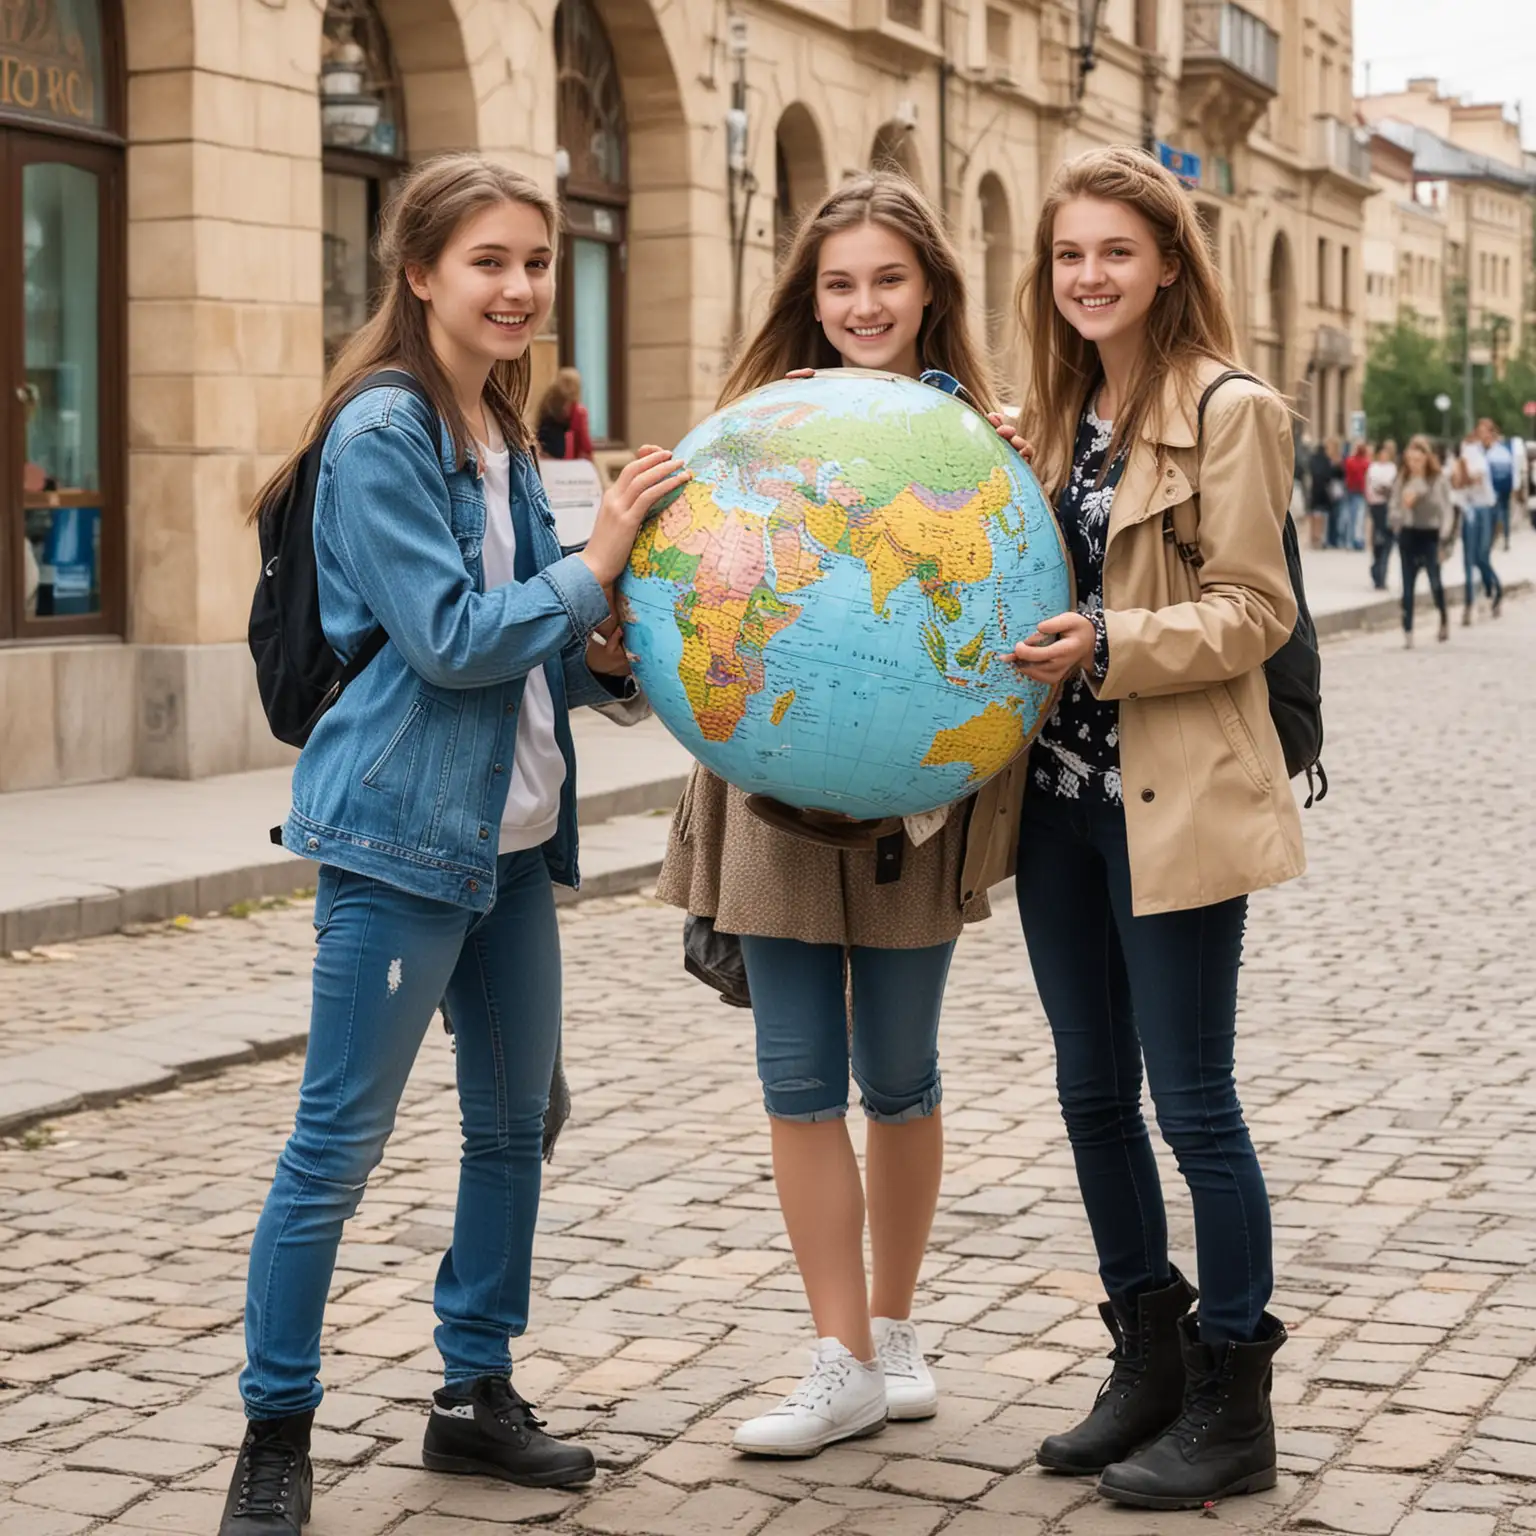 подростки с глобусом, на глобусе карта Евразии, радостные, 20 человек, в городе, улица Волгограда, Родина мать зовет Волгоград
